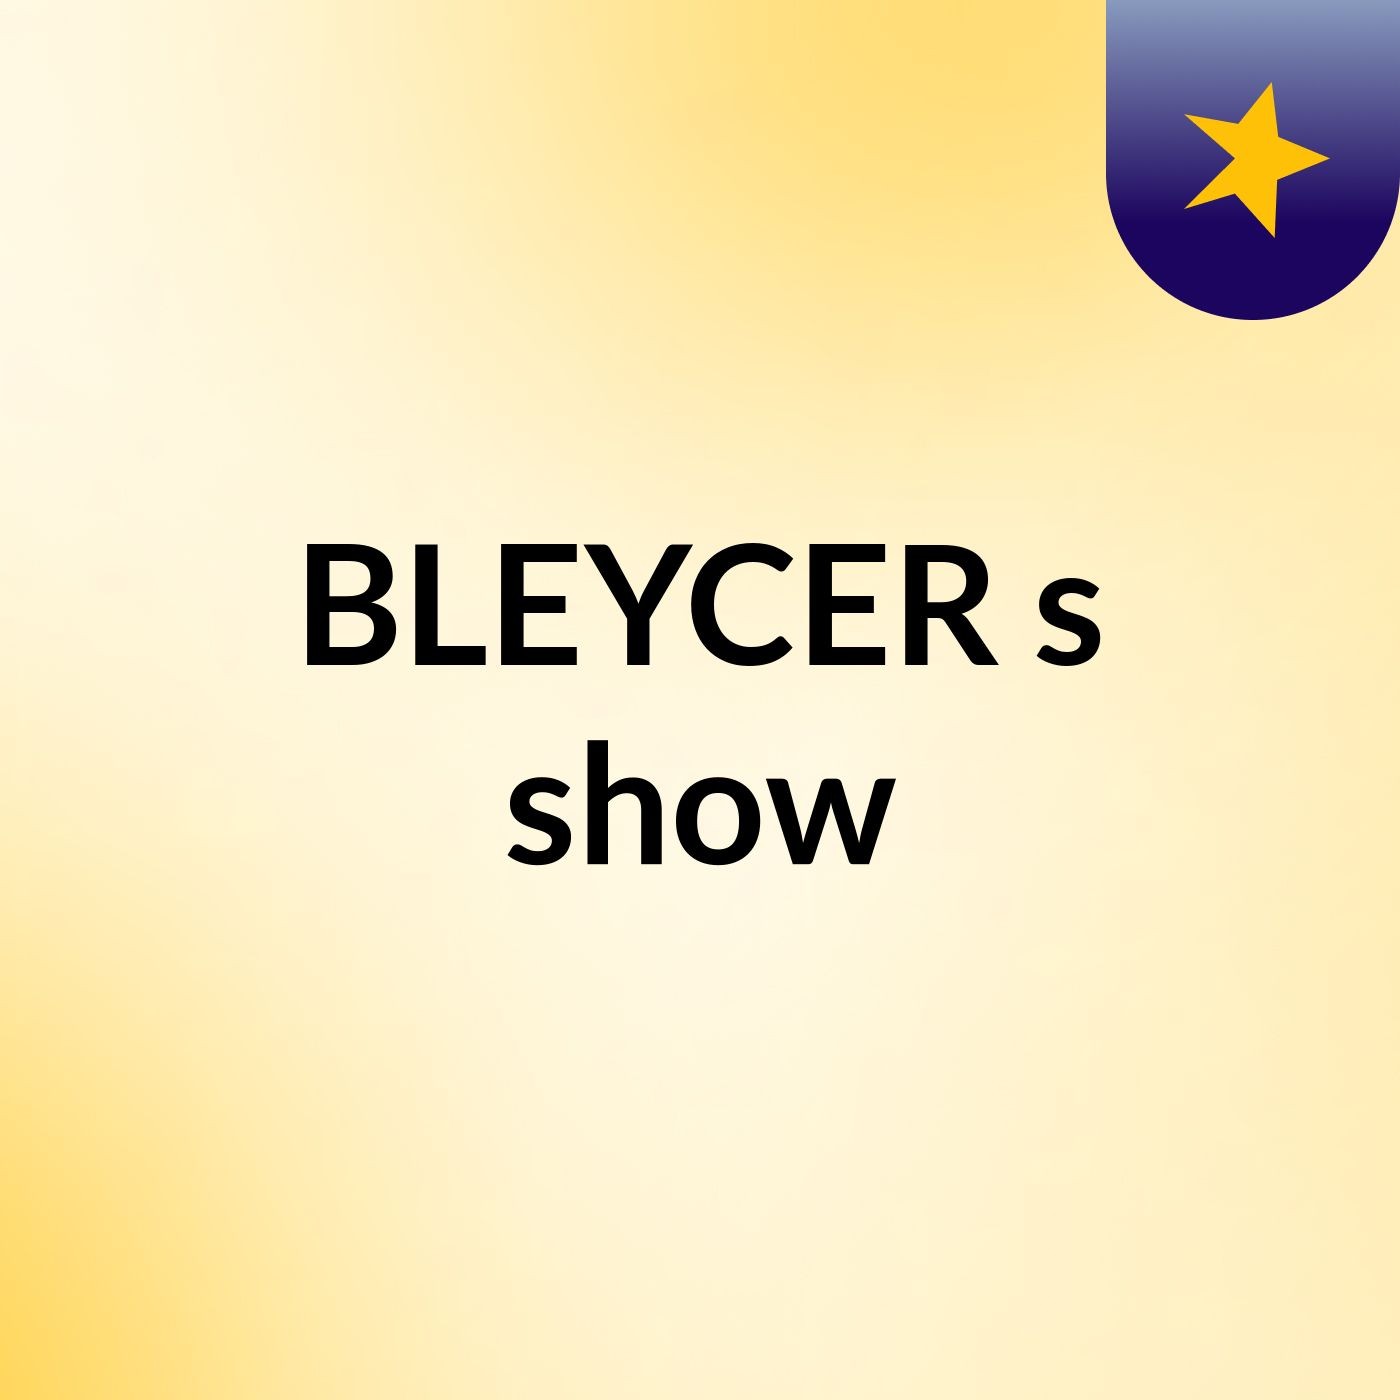 BLEYCER's show